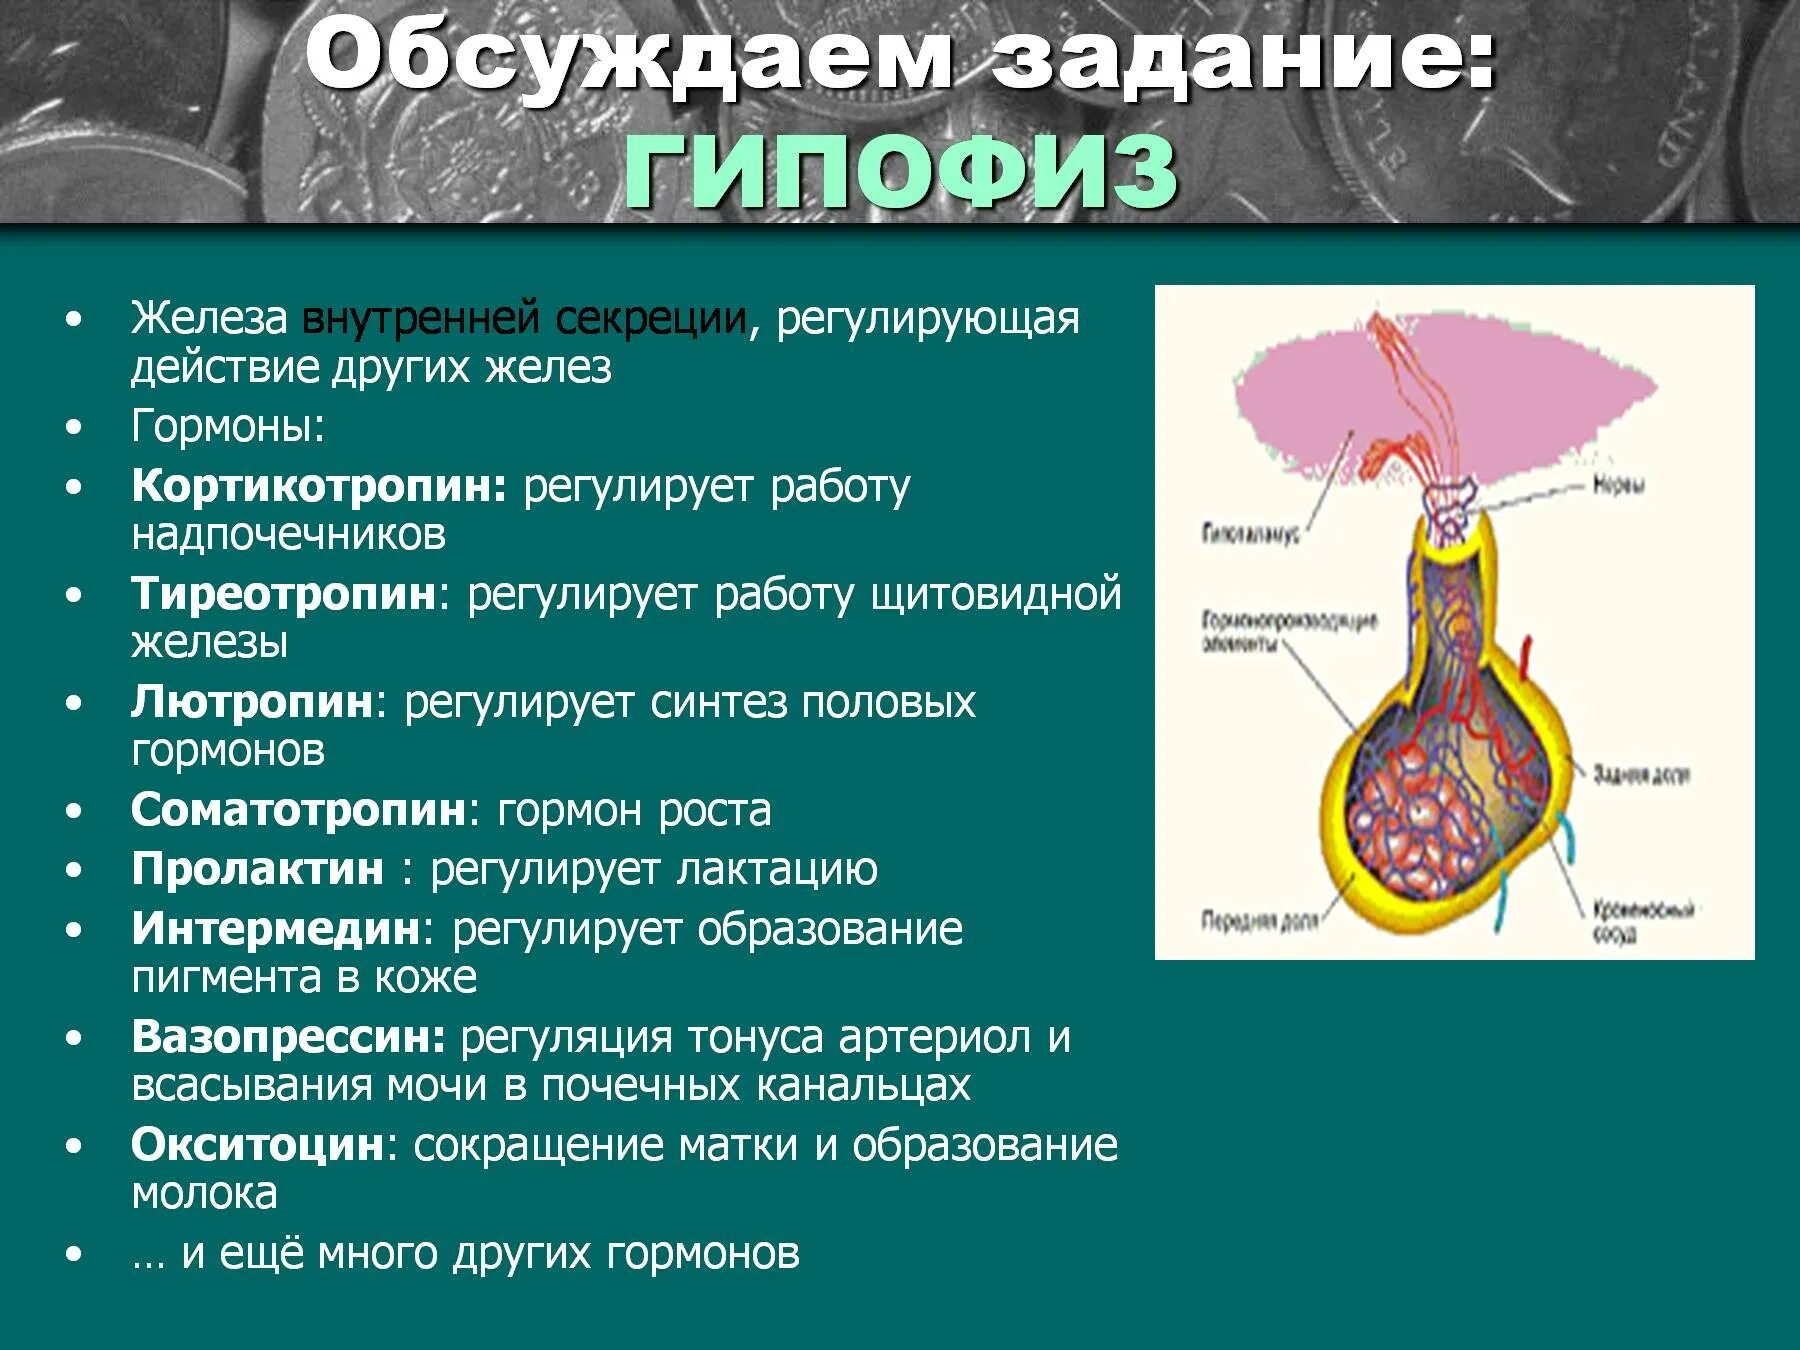 Гипофиз влияет на рост. Гипофиз регулирует деятельность других эндокринных желез. Гормоны регулирующие деятельность гипофиза. Гормоны регулирующие функции гипофиза. Деятельность половых желез регулирует гормон гипофиза.